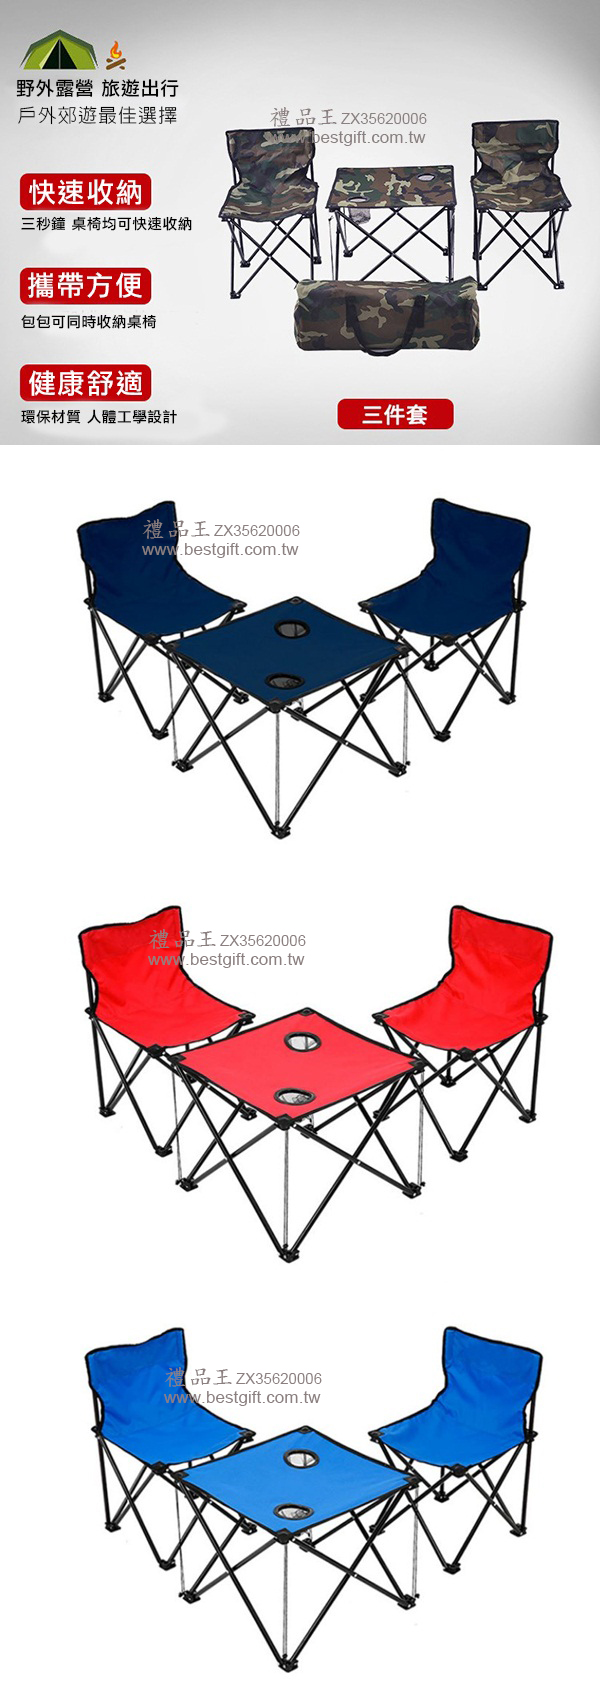 三件套折疊桌椅  商品貨號: ZX35620006  